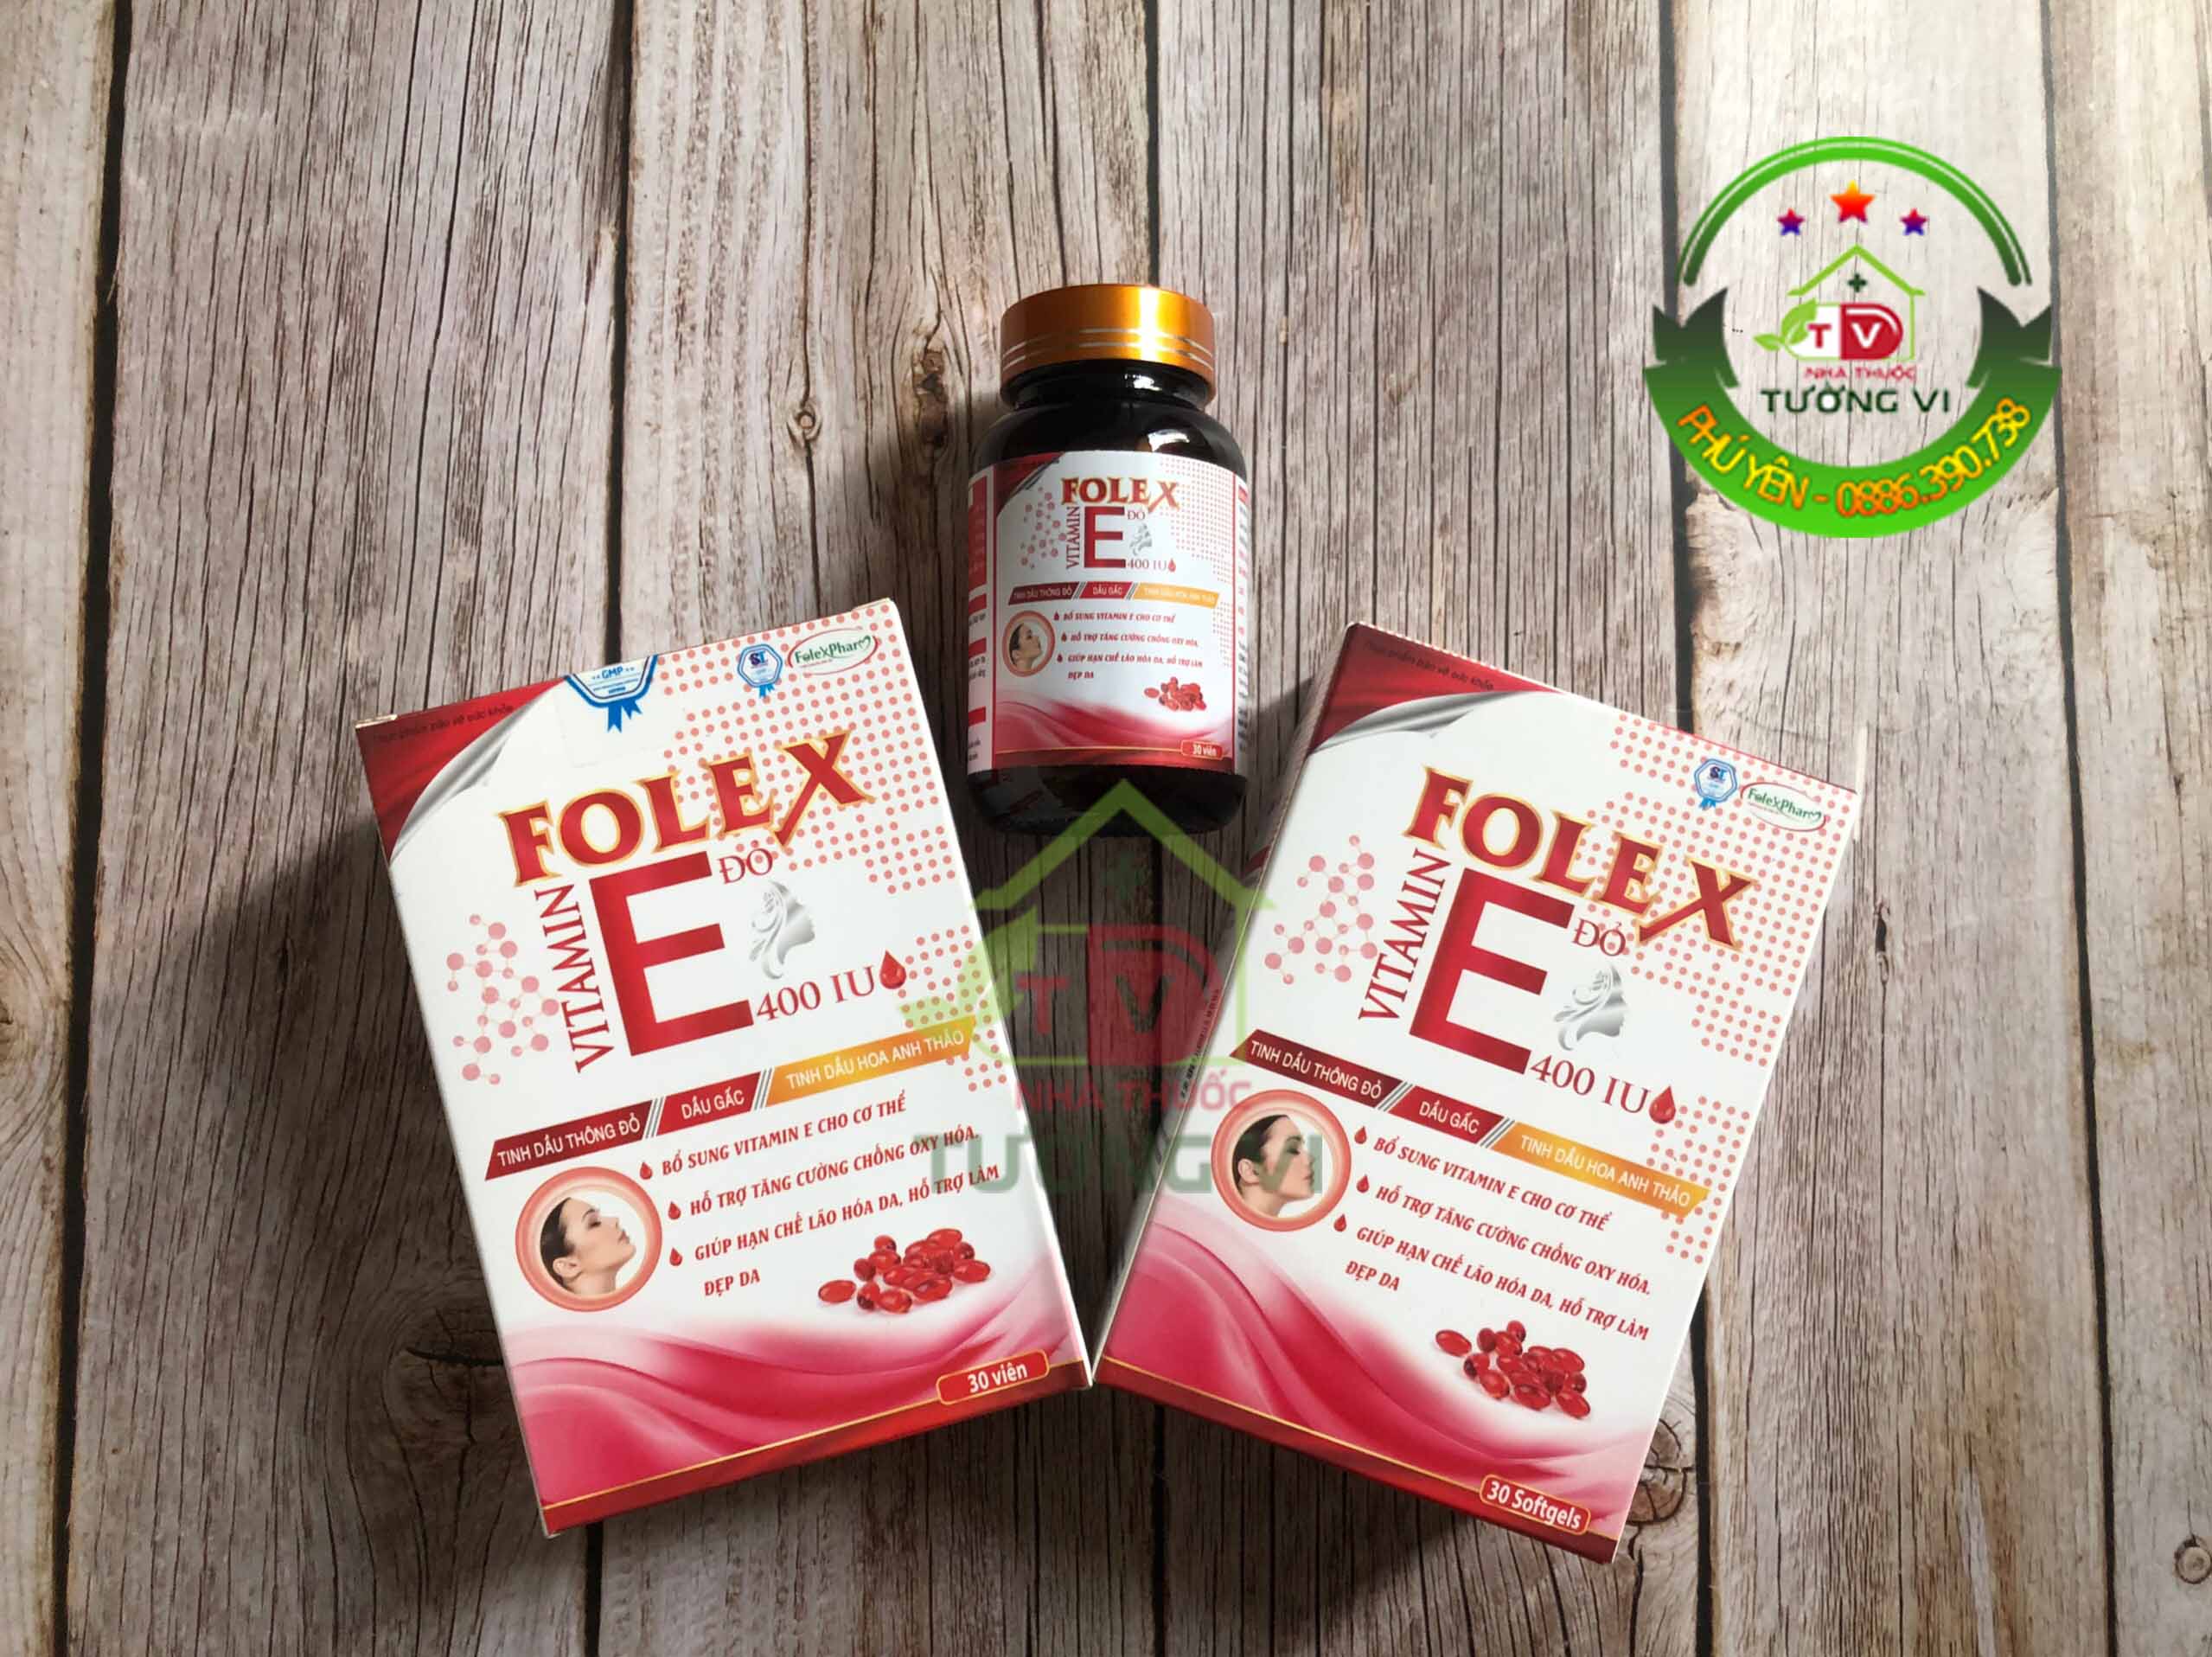 Vitamin E Đỏ 400 IU Folex – Hỗ trợ làm đẹp da, chống lão hóa da